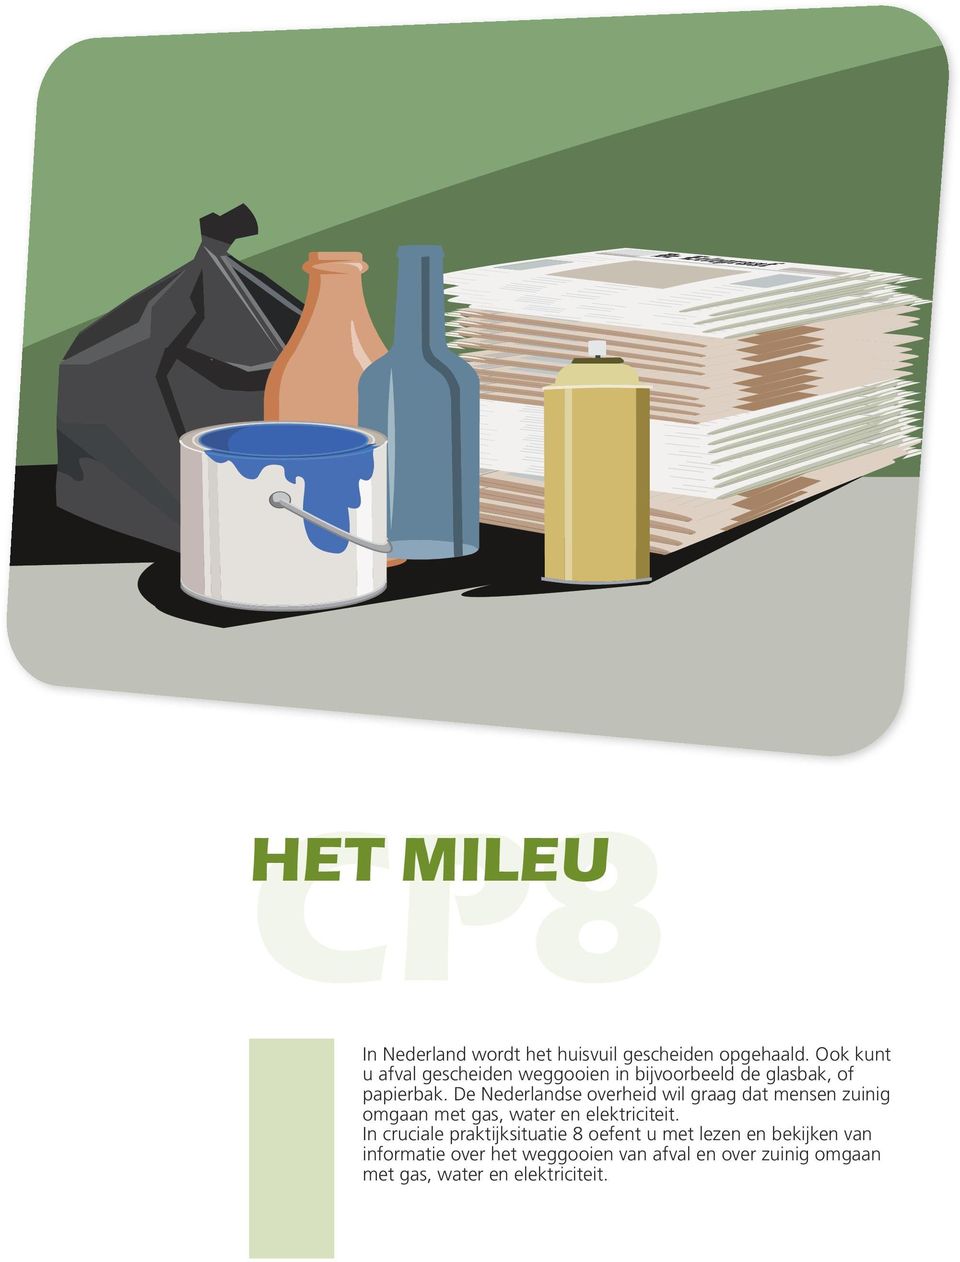 De Nederlandse overheid wil graag dat mensen zuinig omgaan met gas, water en elektriciteit.